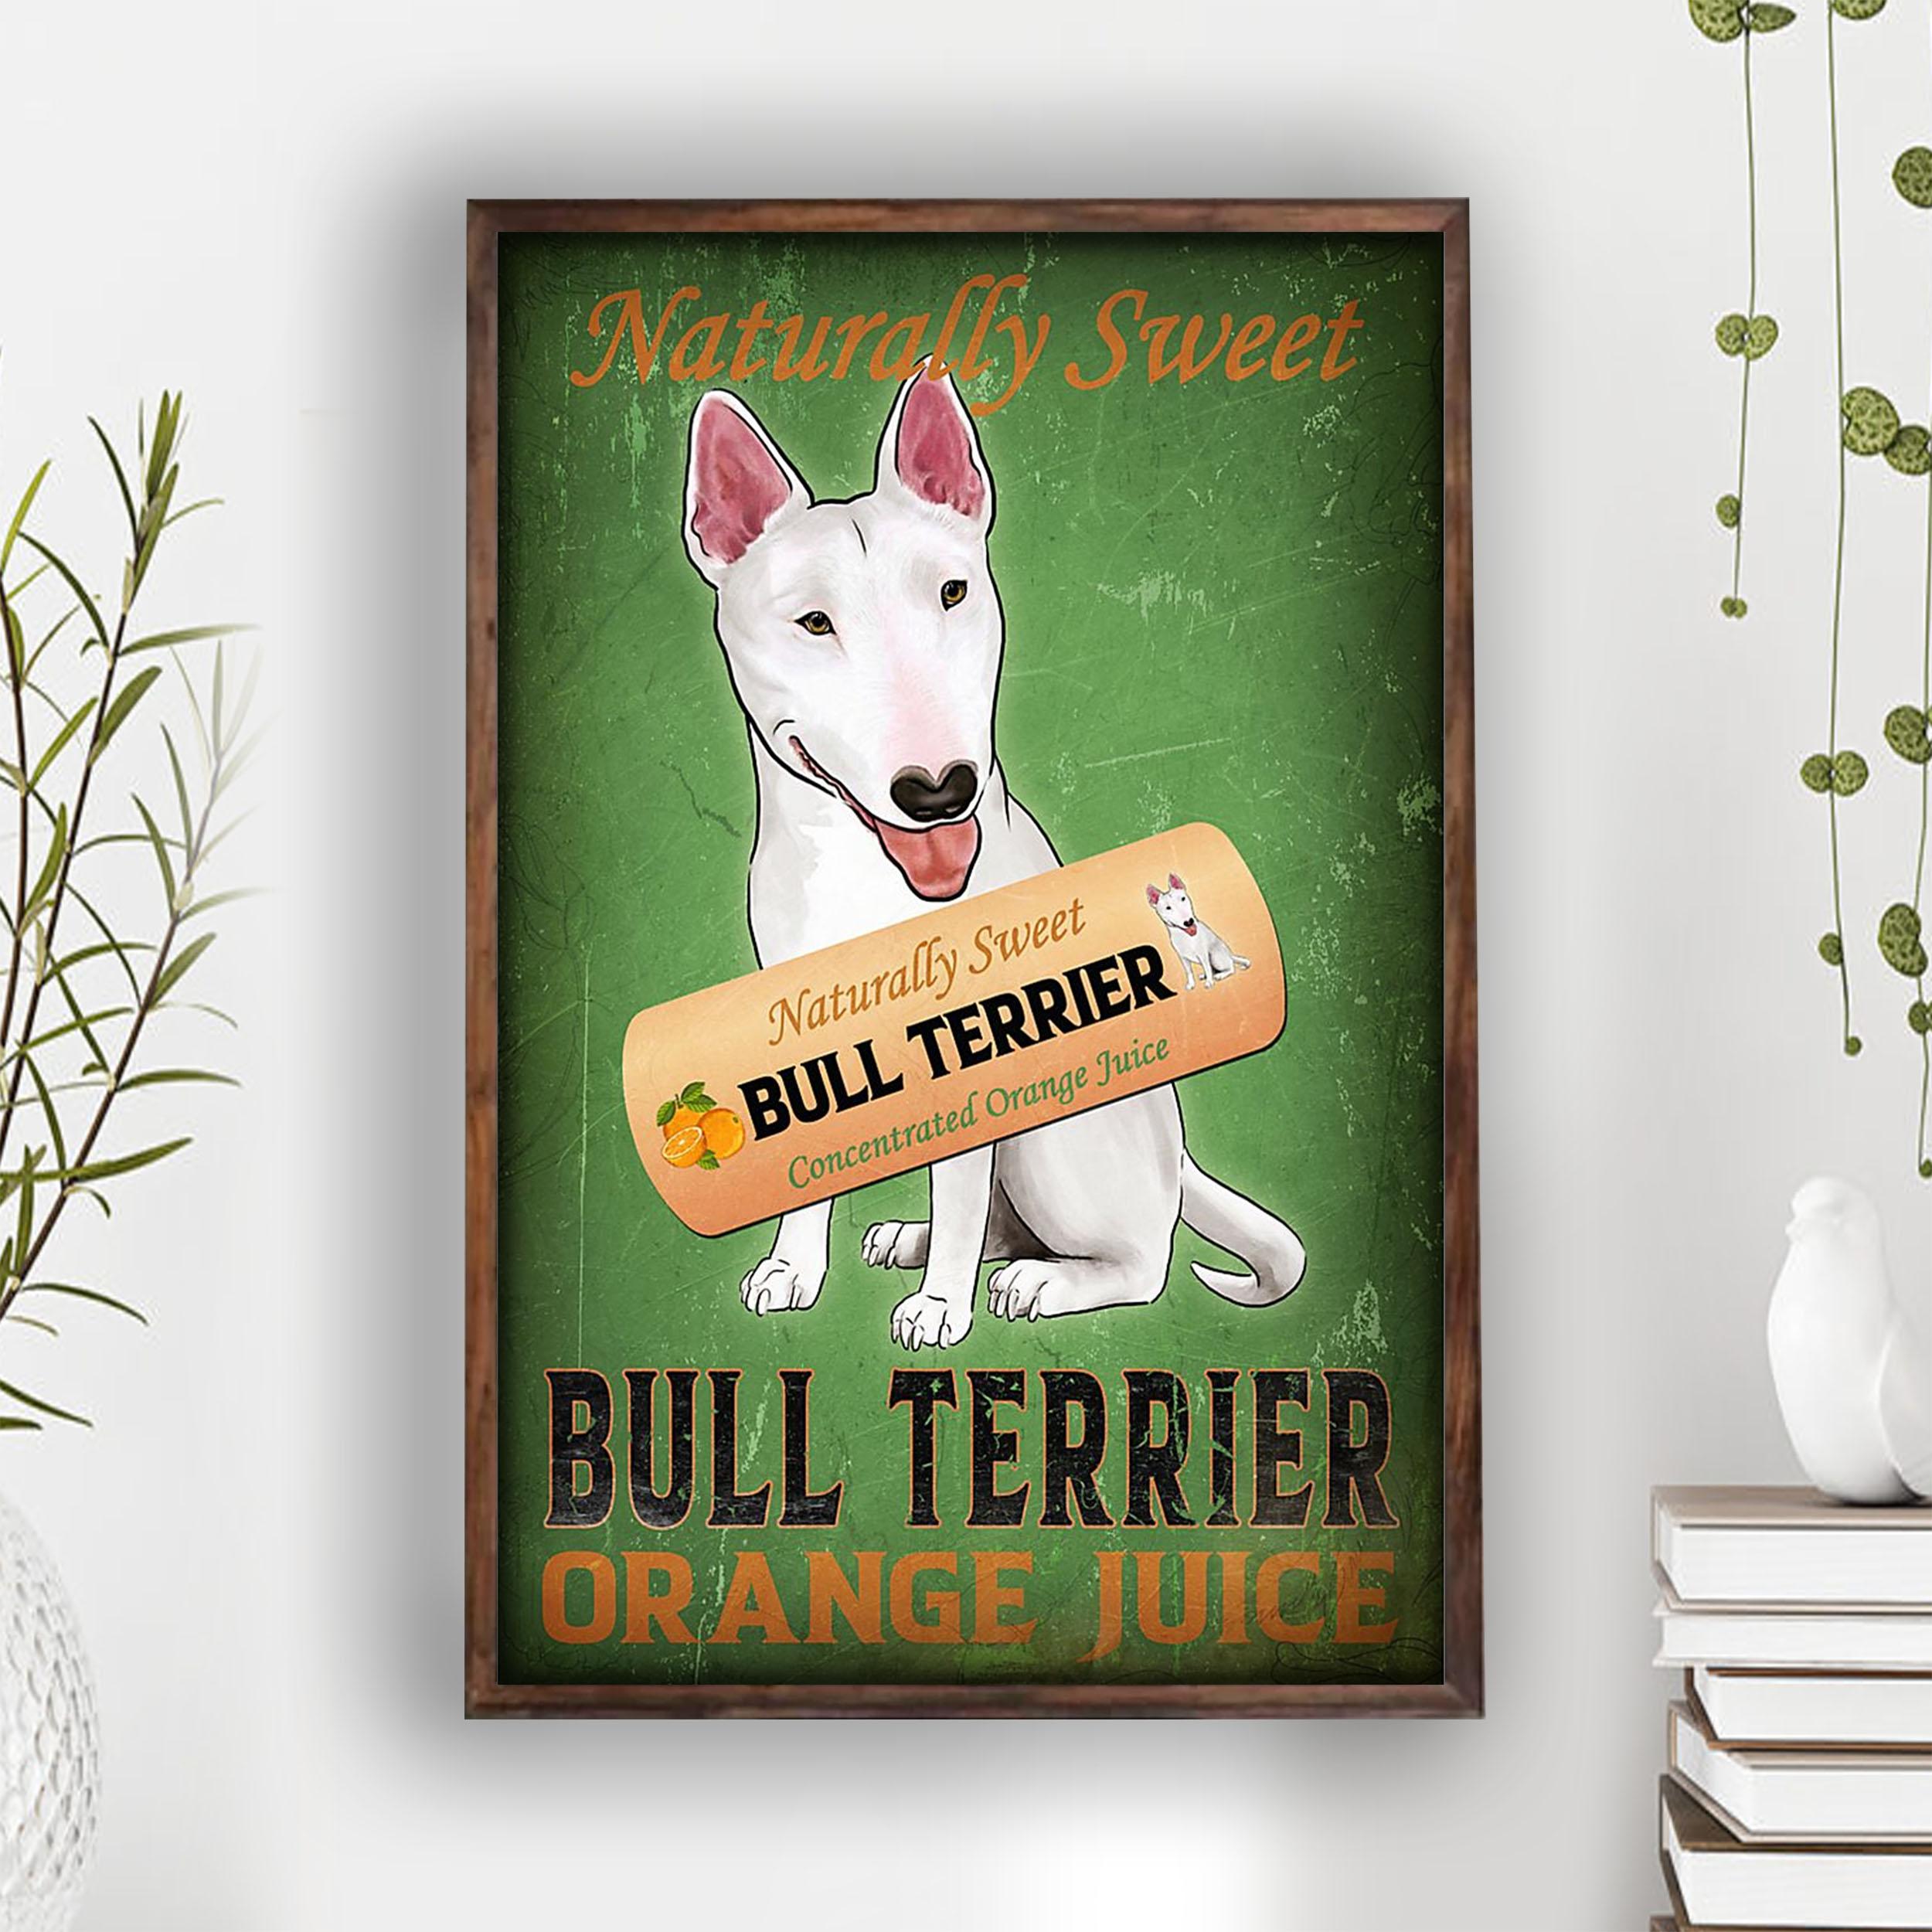 Bull Terrier Poster Bull Terrier Lovers Naturally Sweet Orange Juice Wall Art Home Decor Poster Print